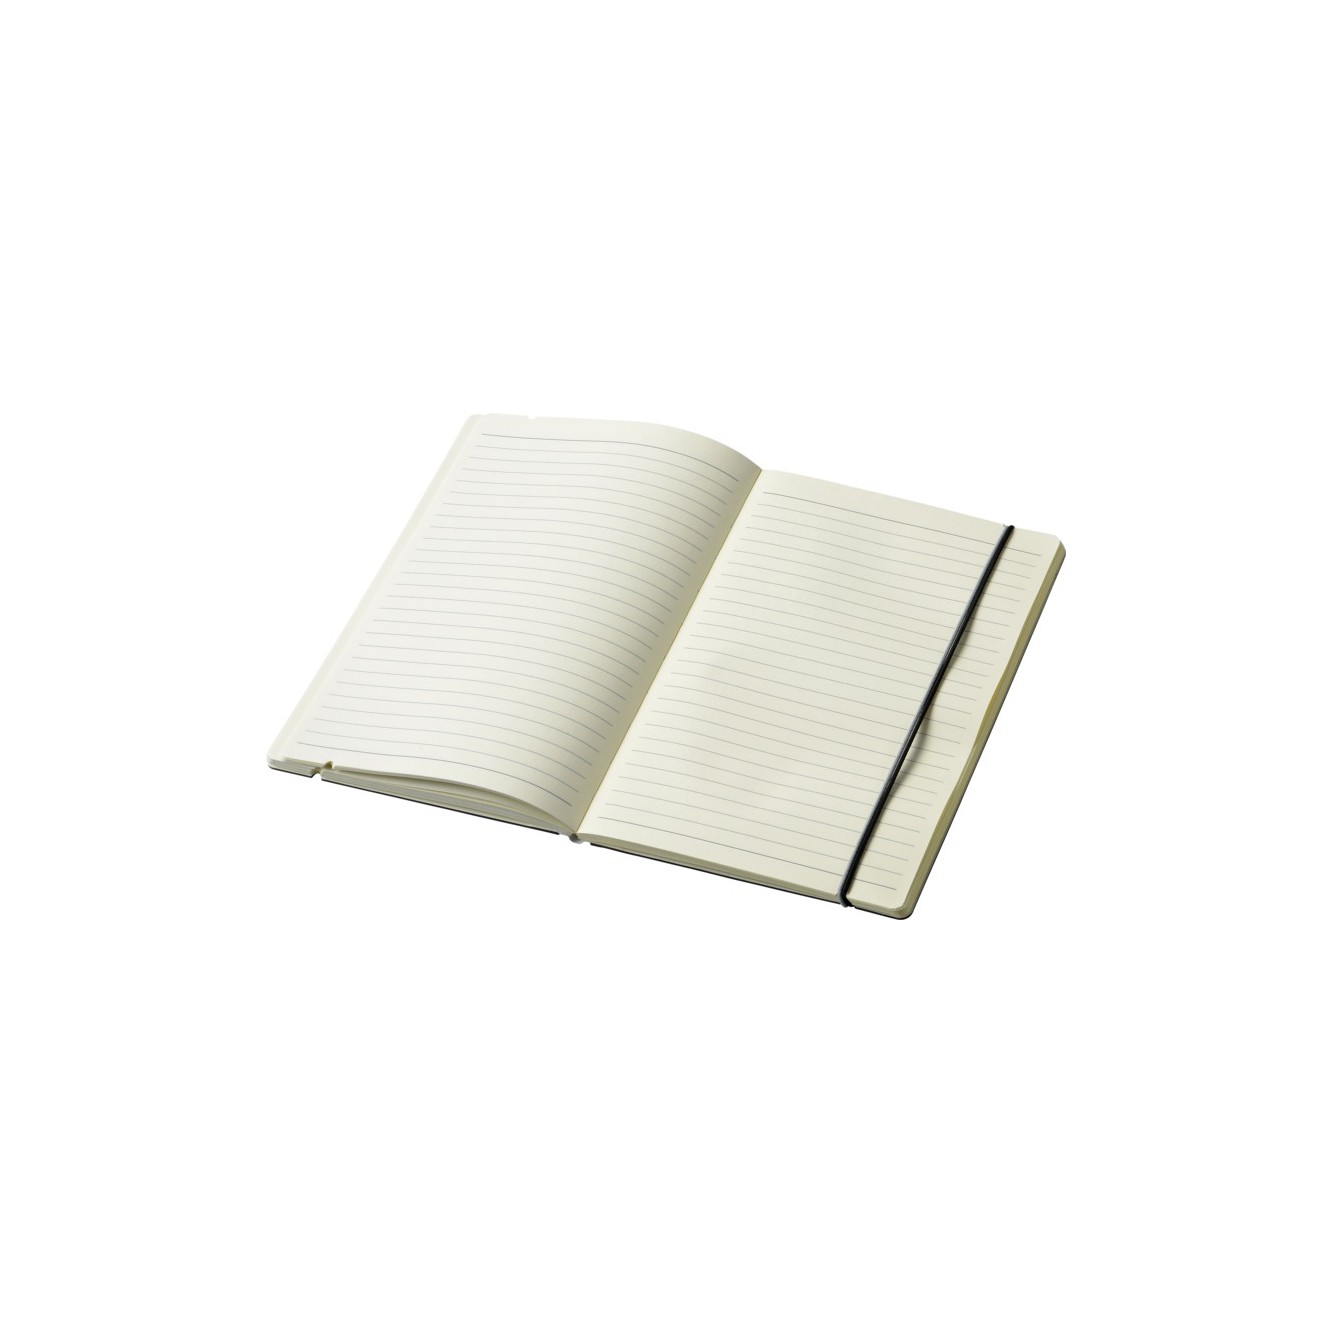 Cuppia A5 hardcover notitieboek